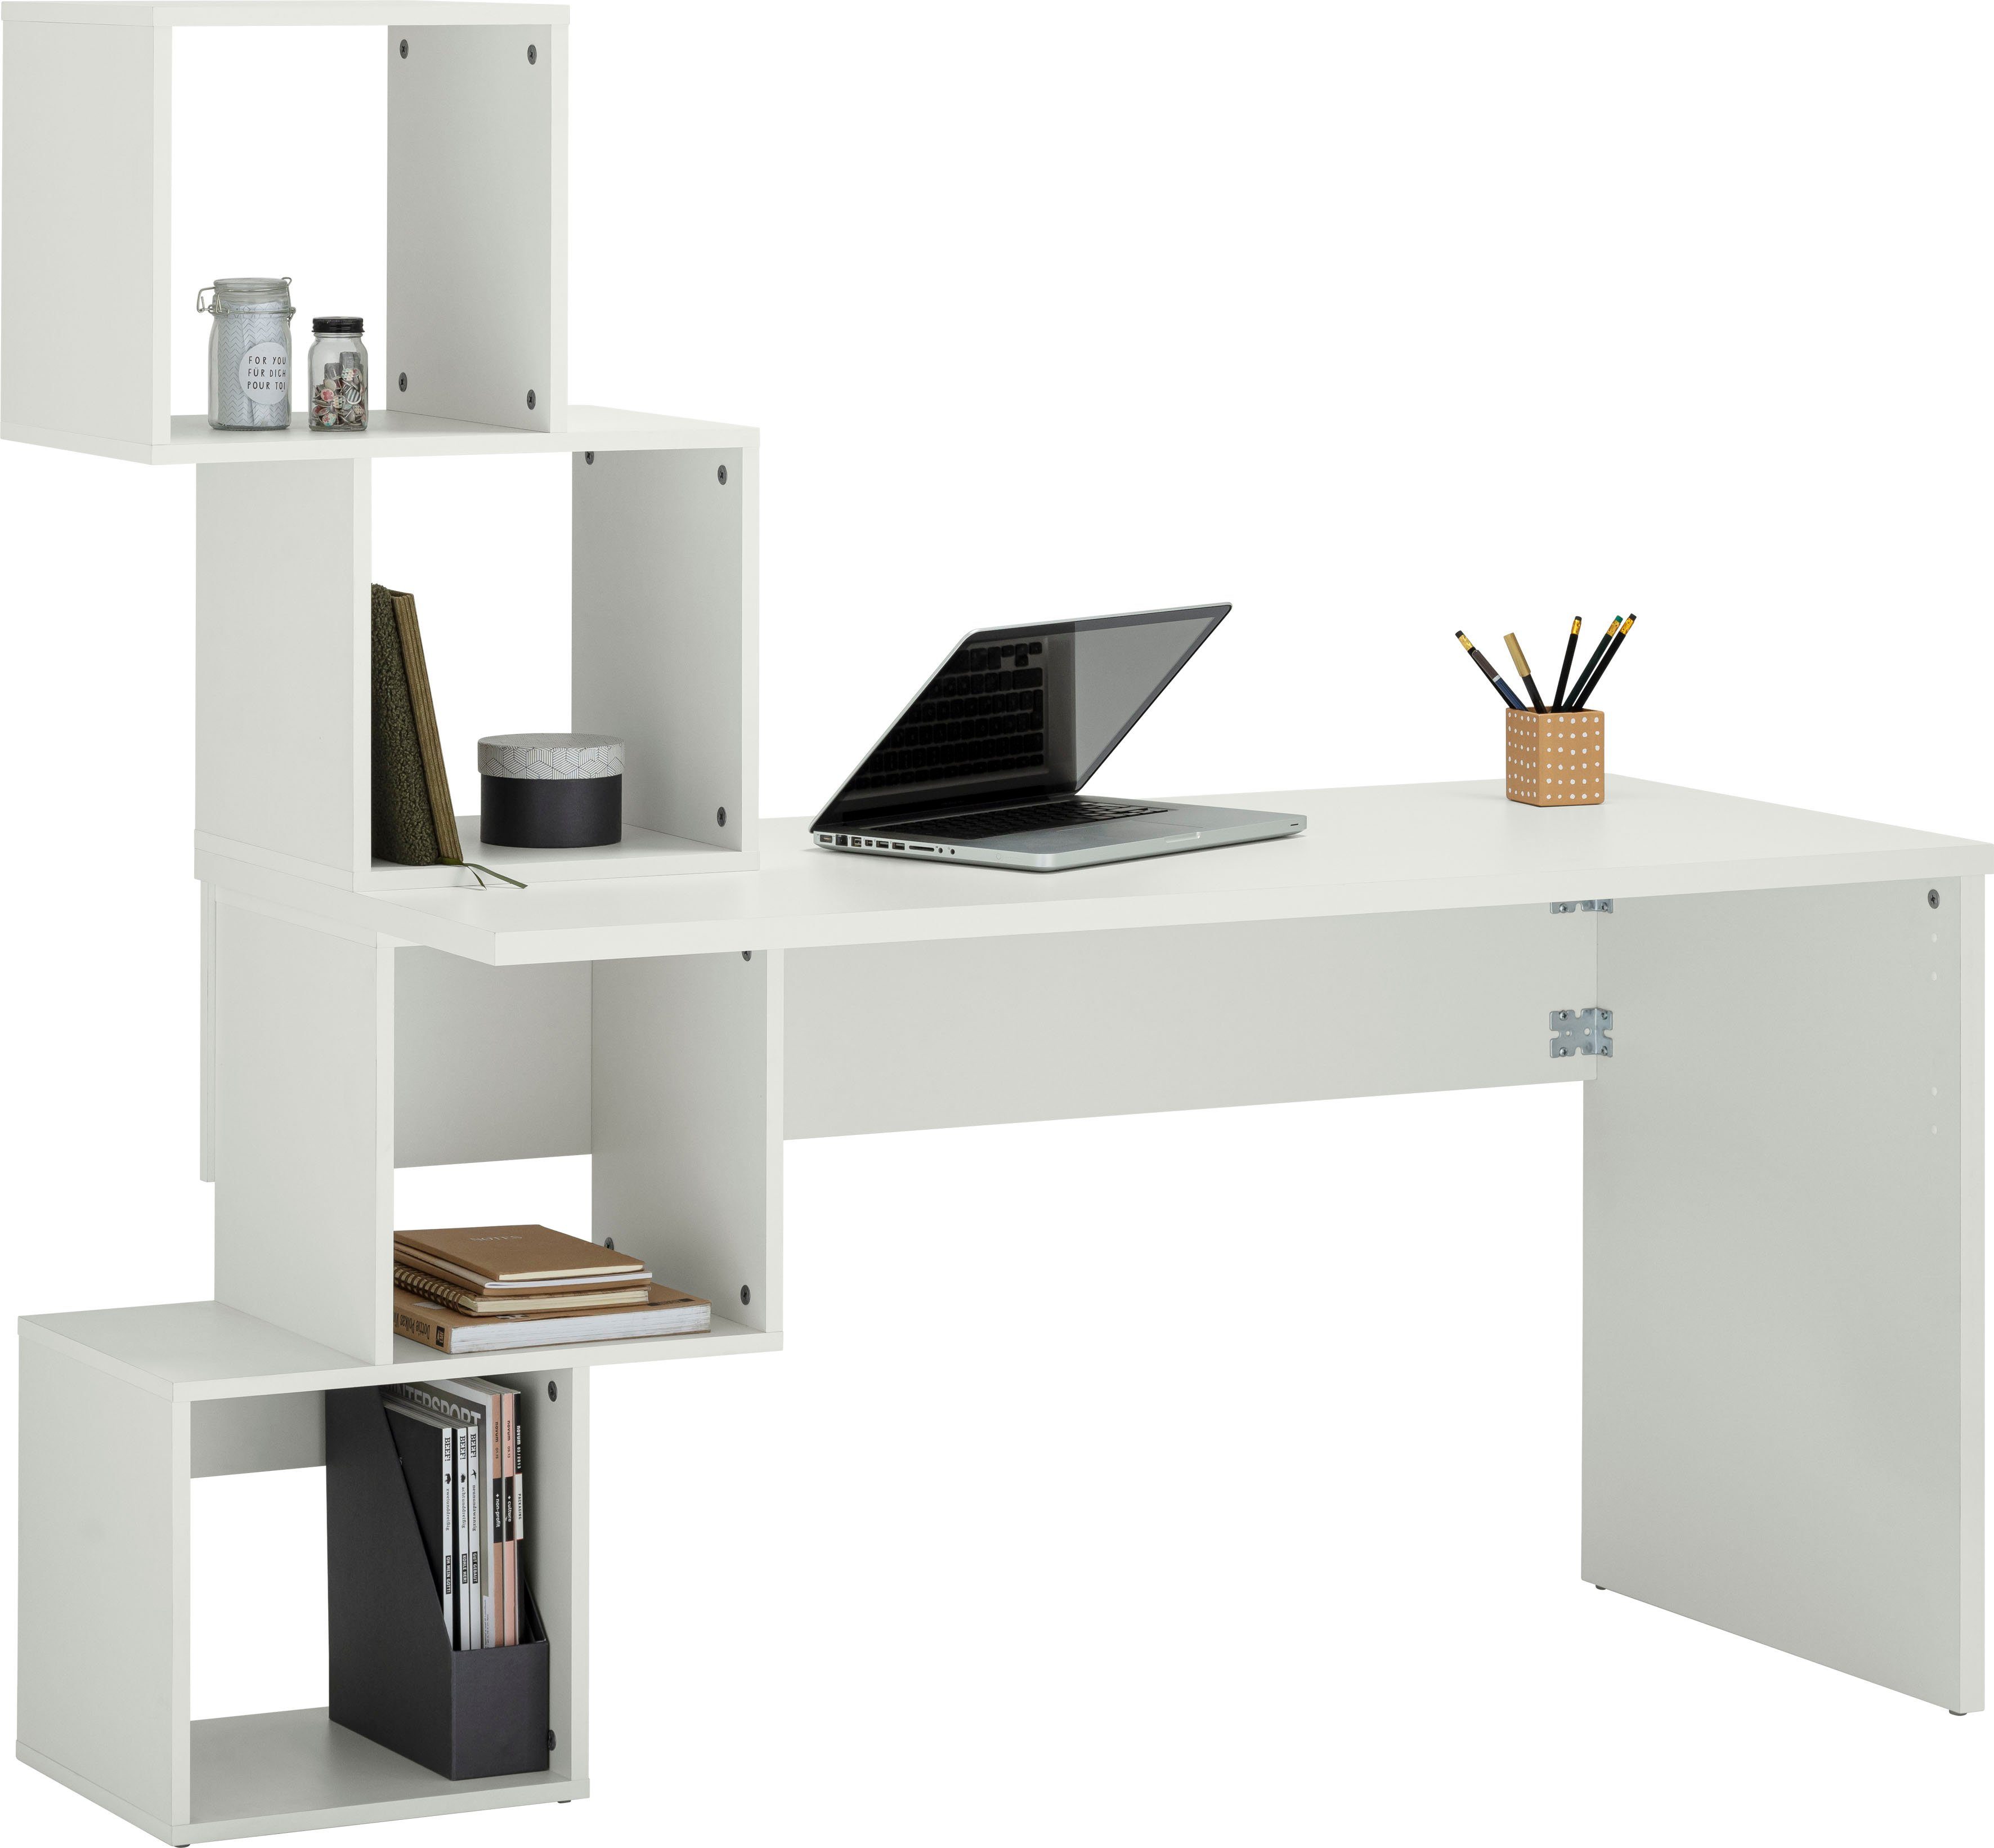 VOGL Möbelfabrik Schreibtisch Reggi, mit 4 offenen Fächern weiß | weiß | weiß